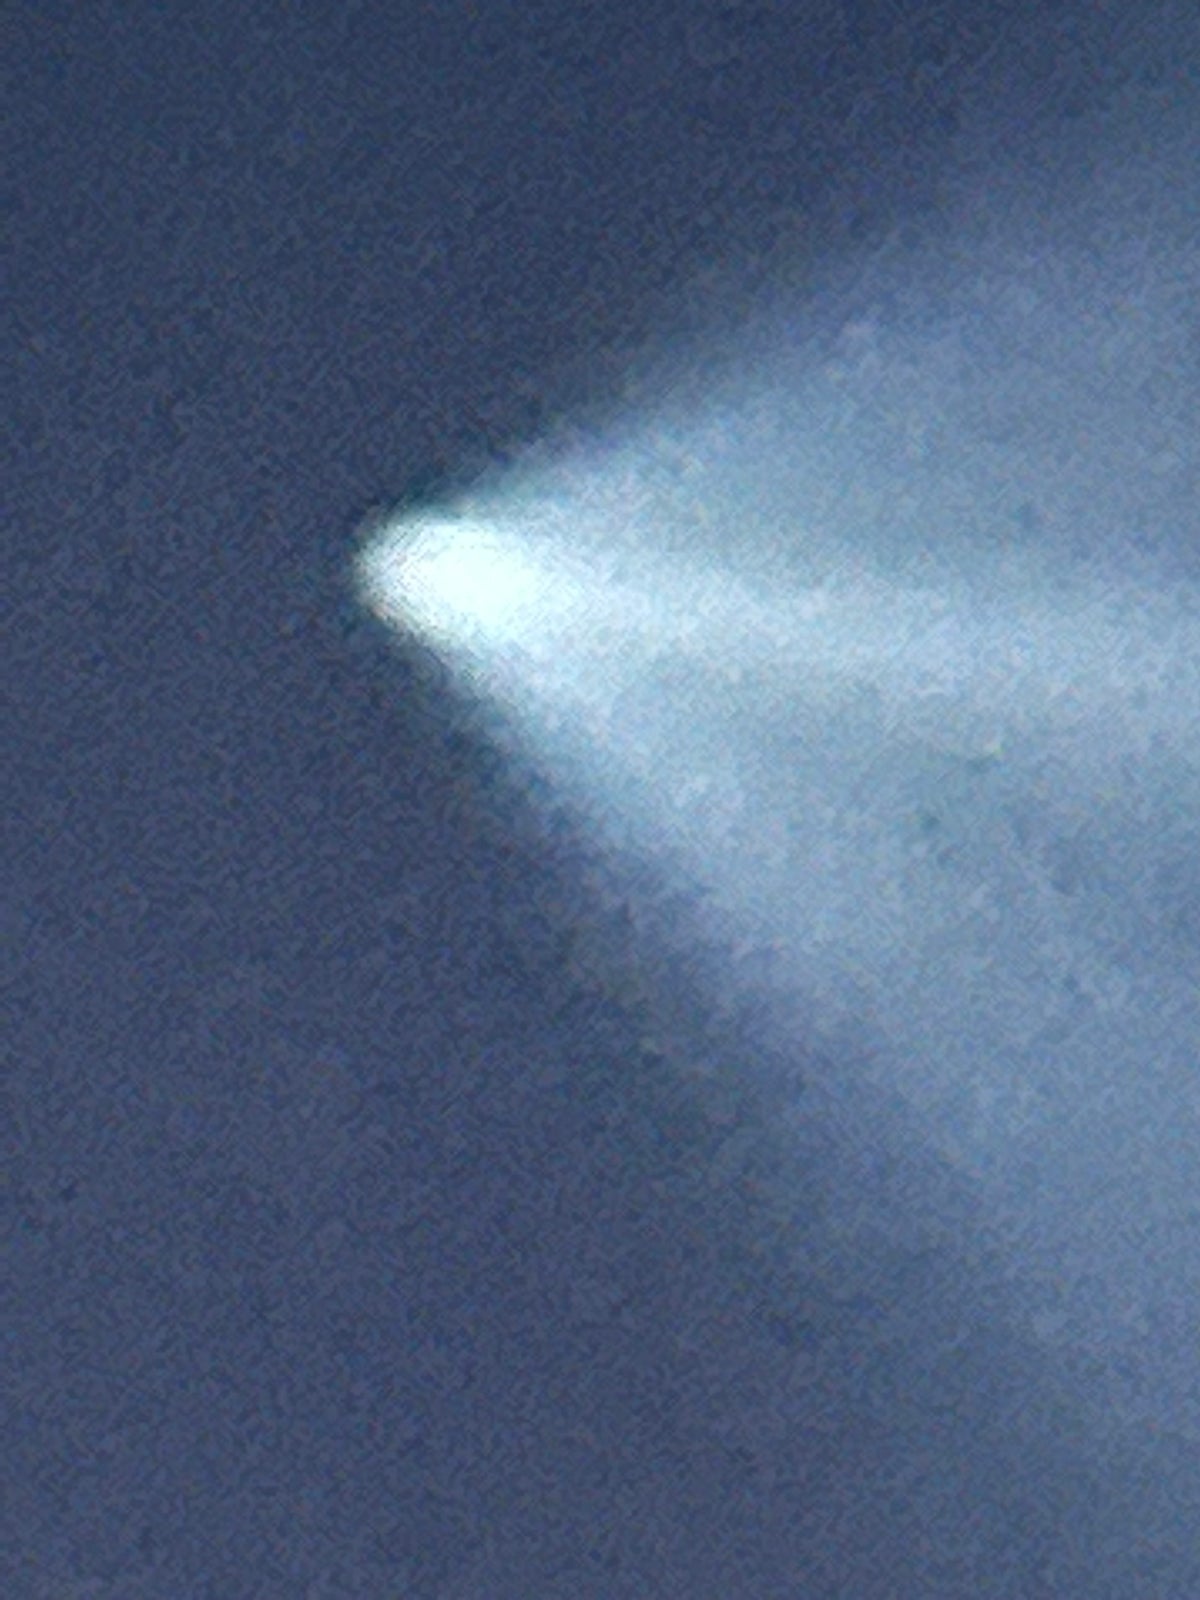 El rastro de vapor del cohete Space X Falcon 9 visto sobre Marlboro.  Foto cortesía de Virginia Klein, espectadora de News 12 New Jersey.